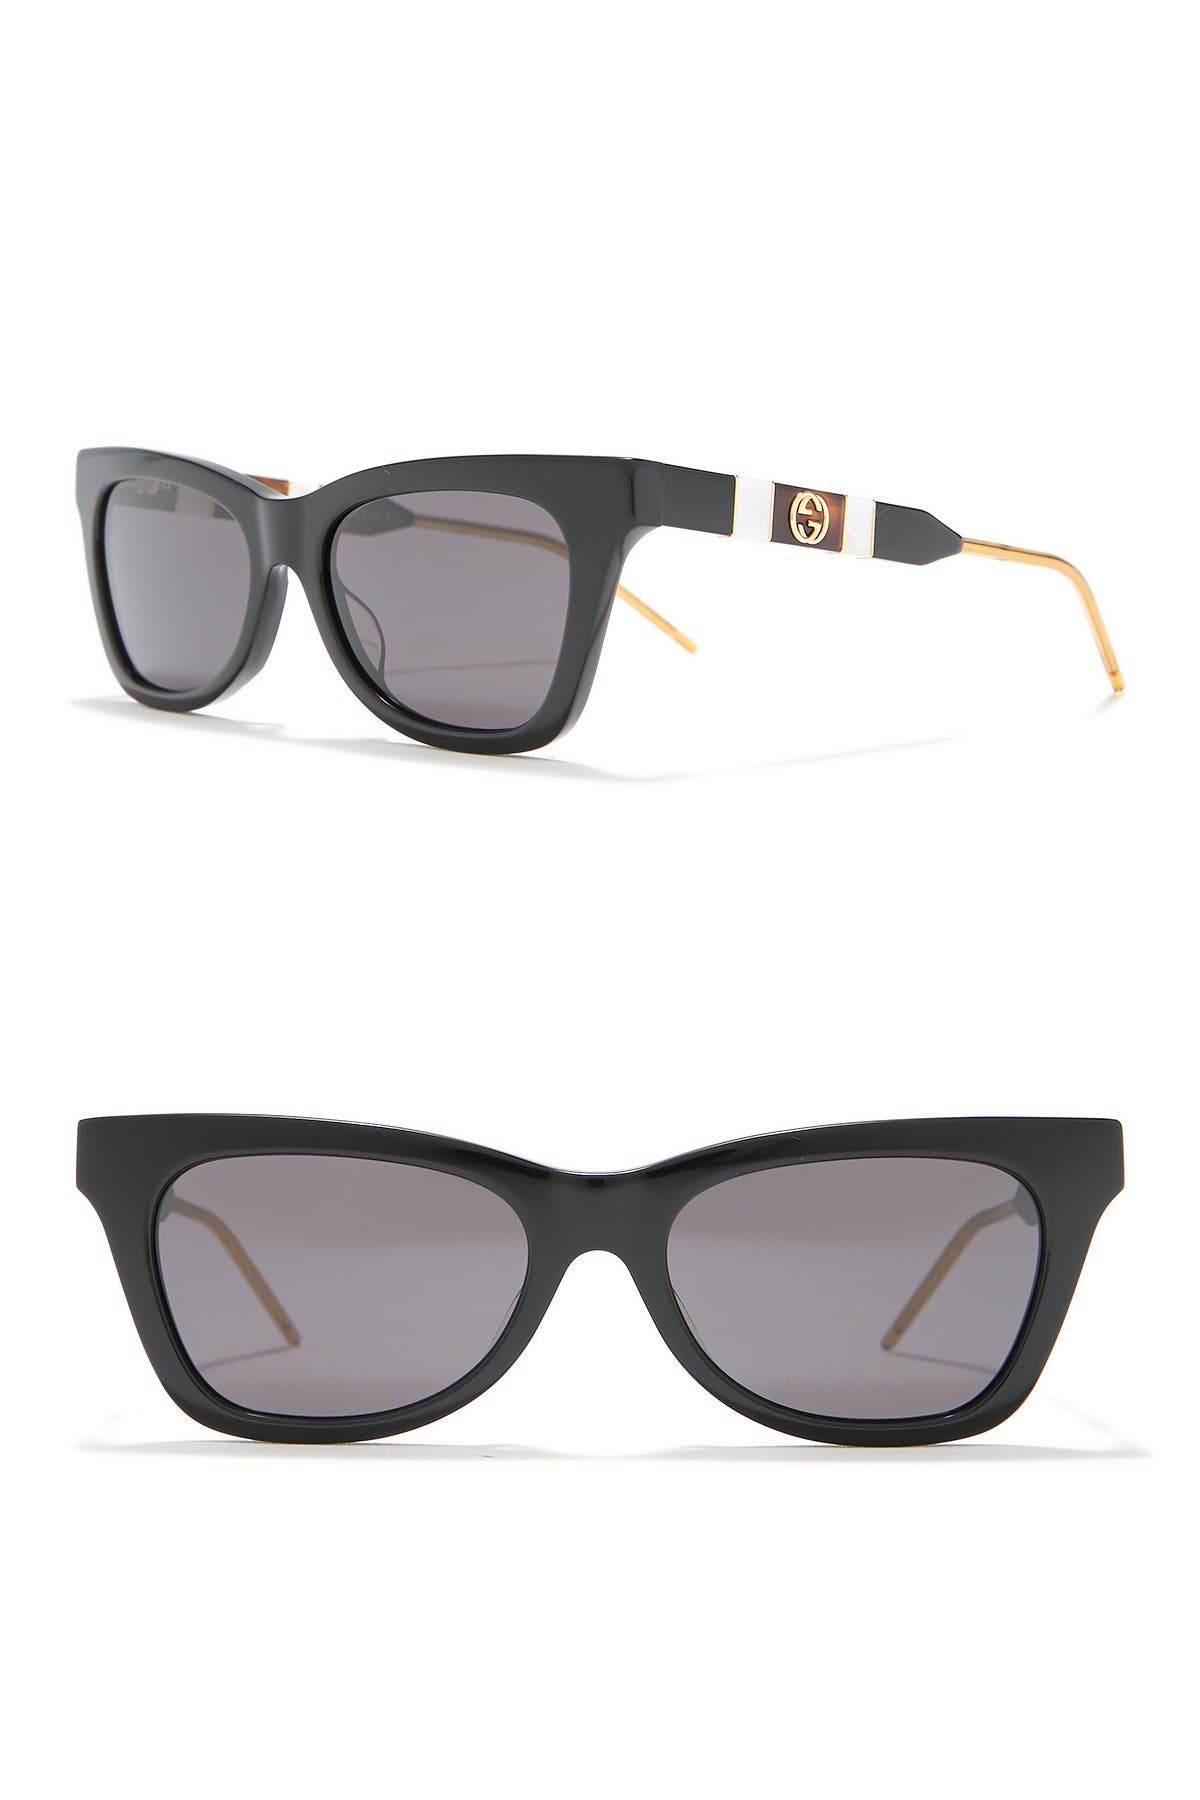 gucci 53mm cat eye sunglasses